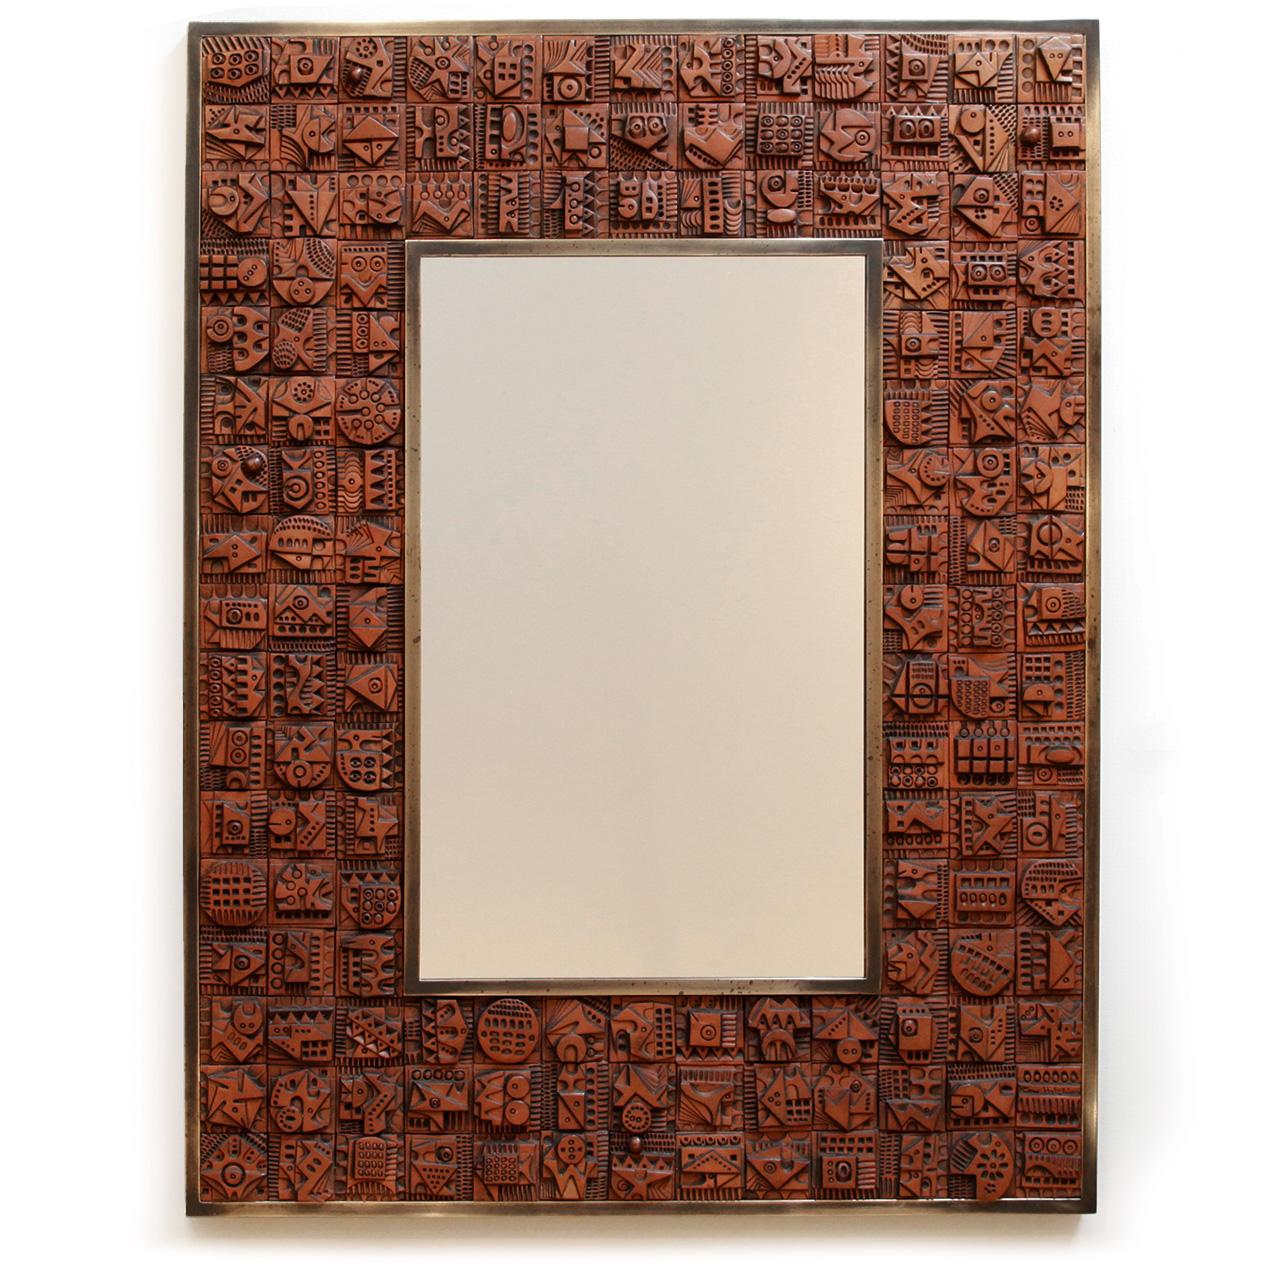 Superbe miroir original réalisé par l'artiste, avec 144 carreaux de terre cuite faits à la main de manière unique. Signé par l'artiste dans l'un des carreaux. Ce grand miroir frappant a une grande touche de brutalisme et de modernisme. Un autre